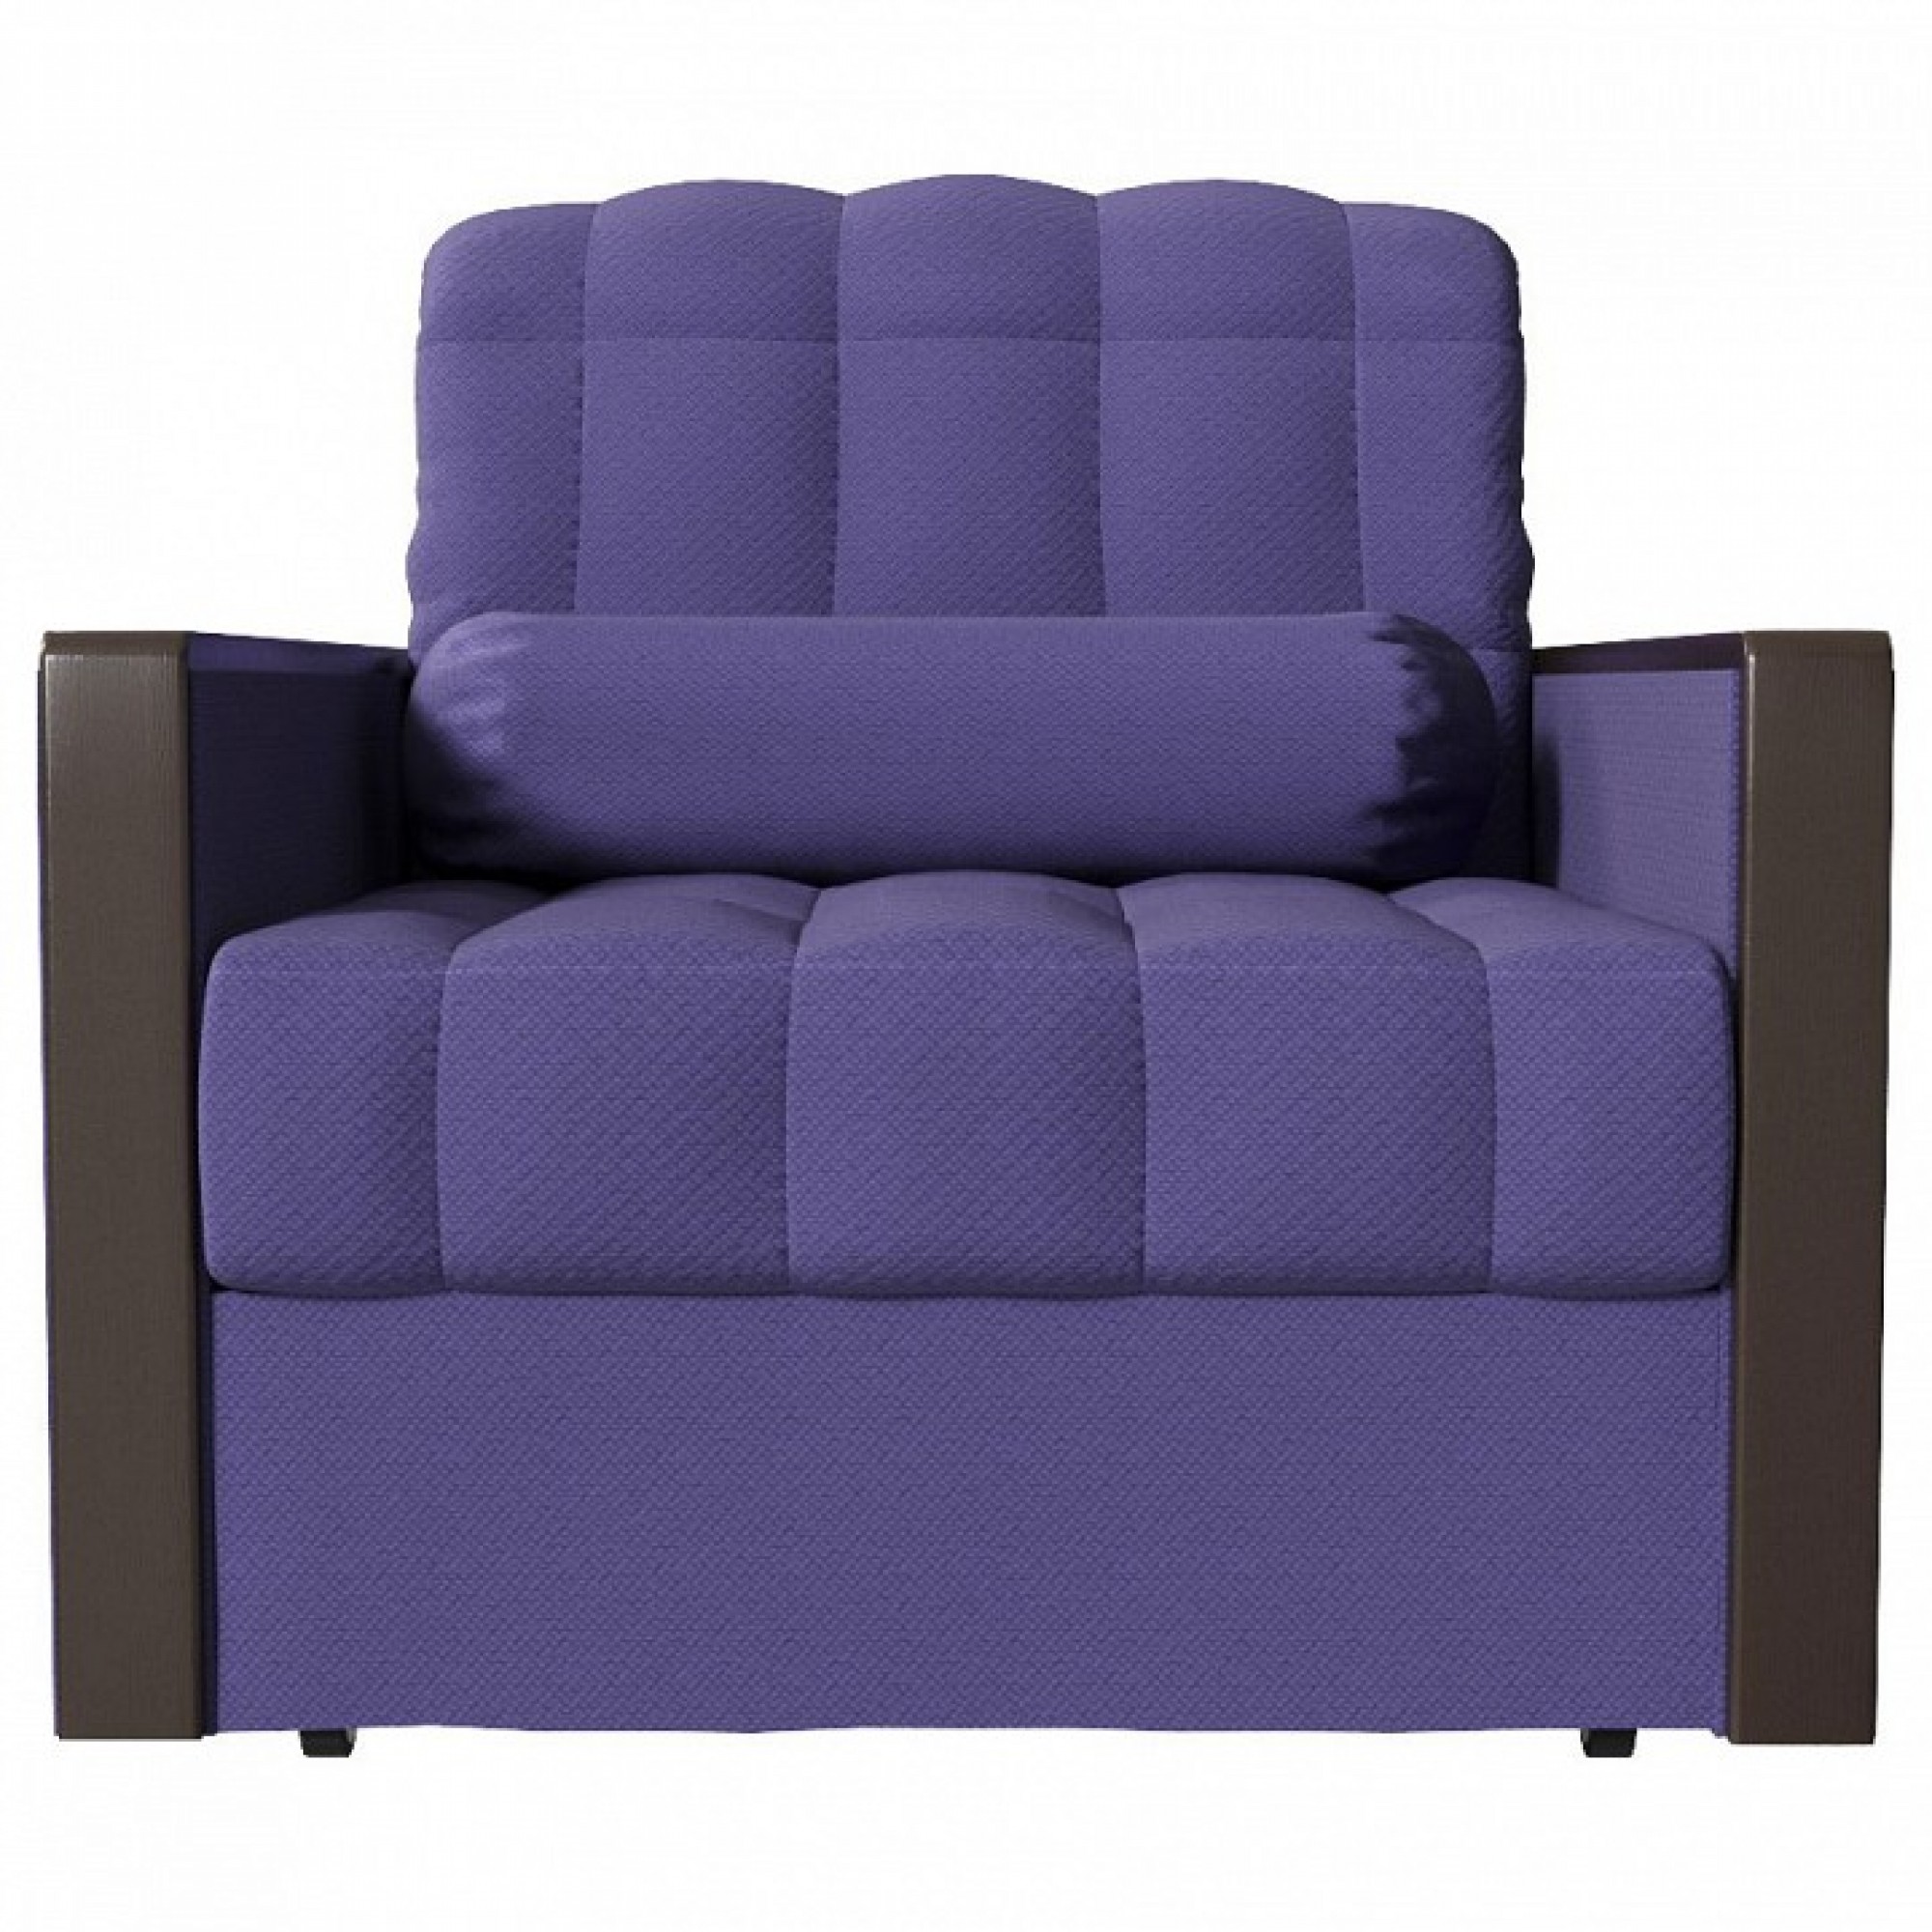 Кресло-кровать Милена фиолетовый SMR_A0381401800